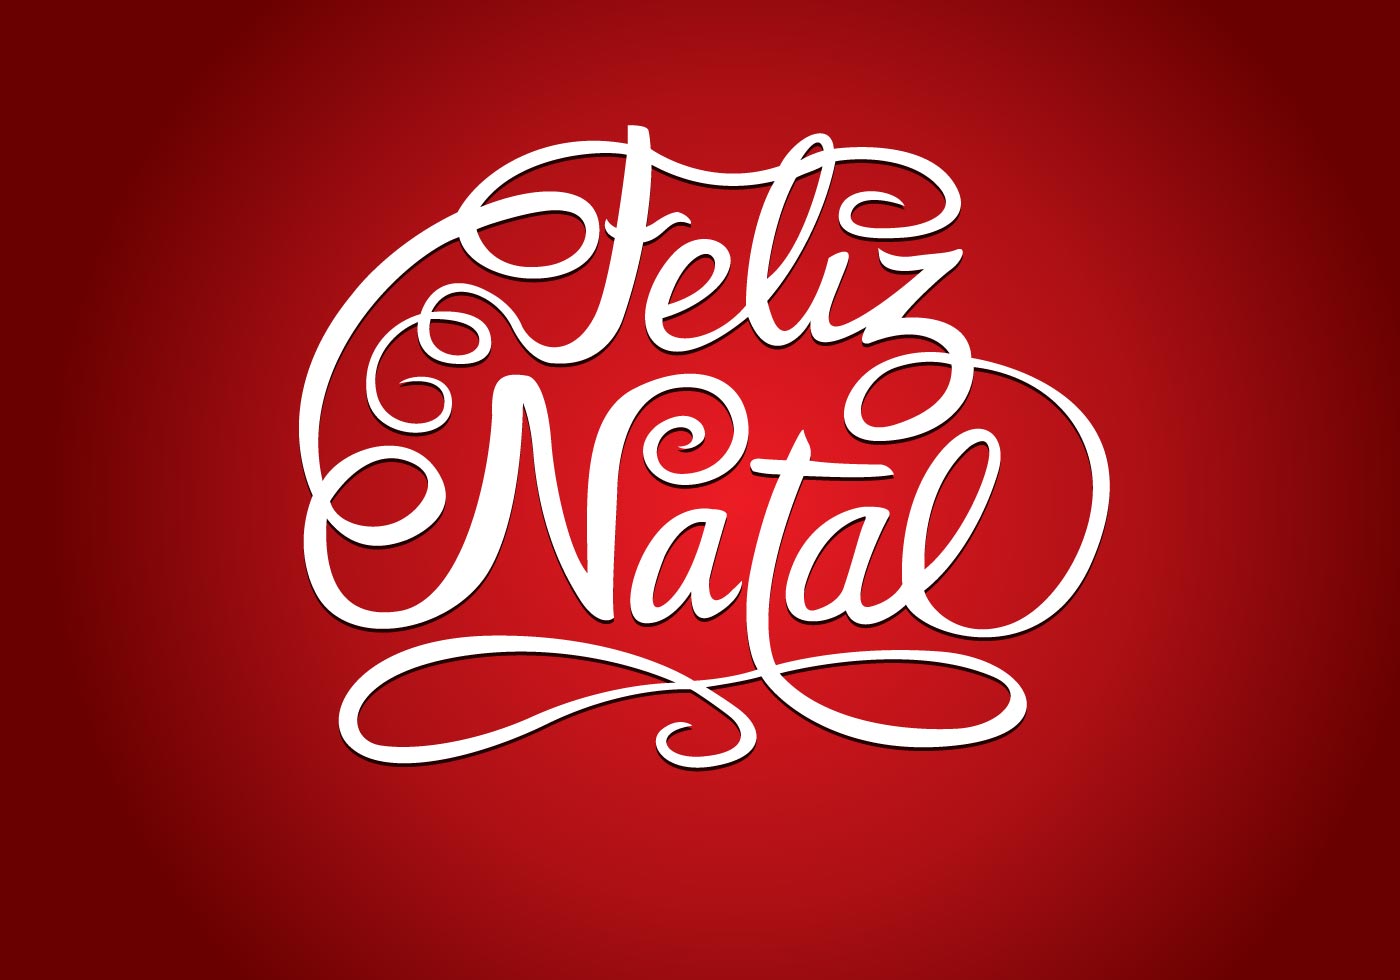 Feliz Natal - Download Free Vector Art, Stock Graphics & Images